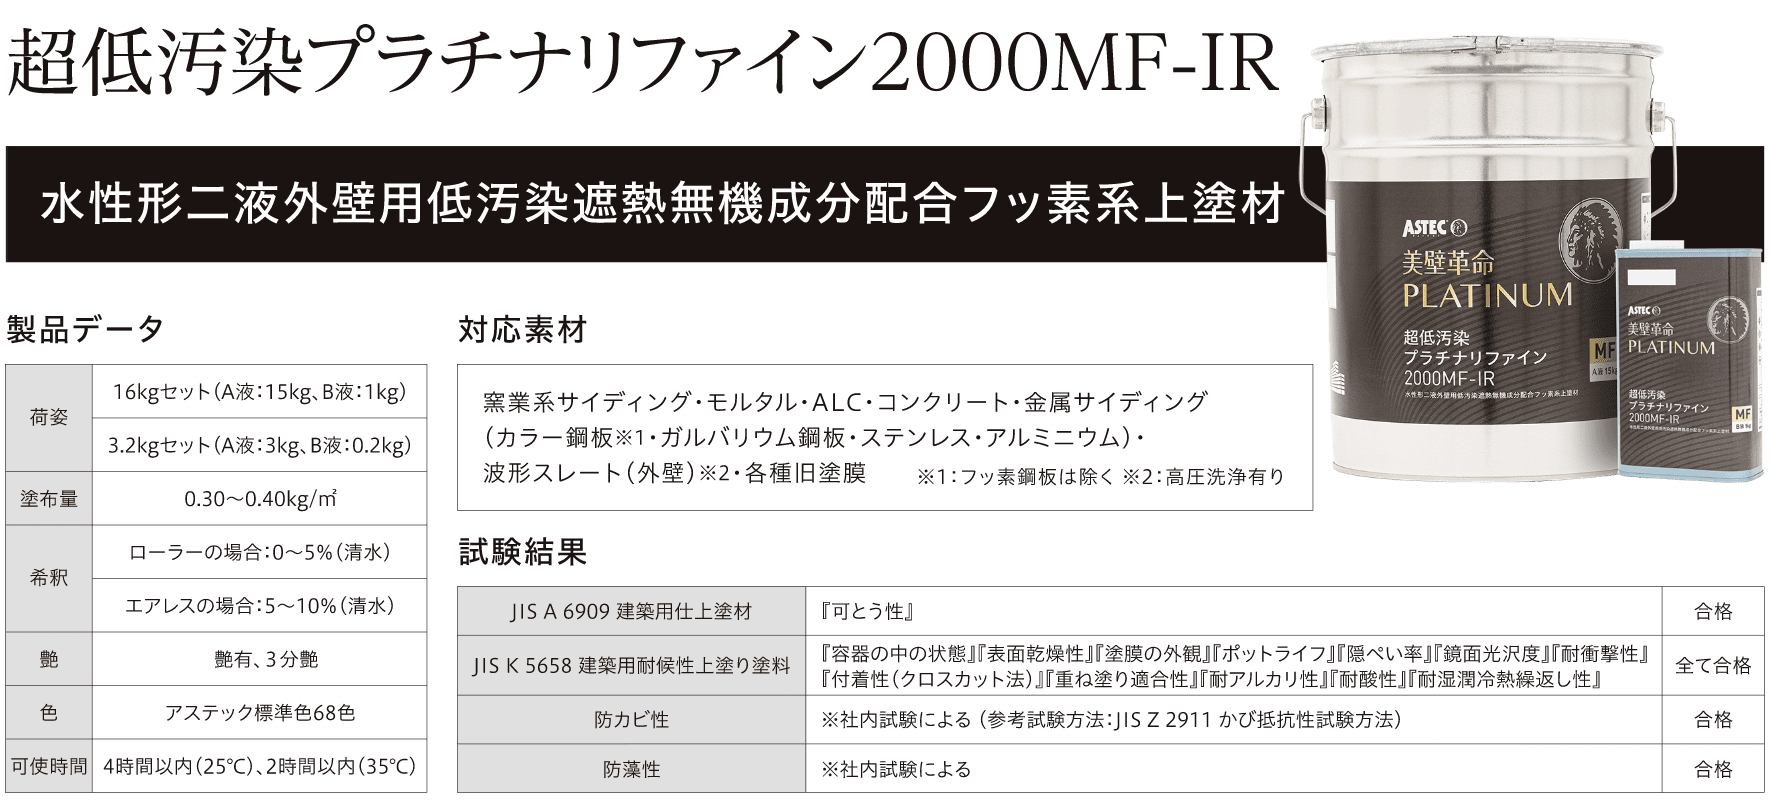 超低汚染プラチナリファイン2000MF-IR